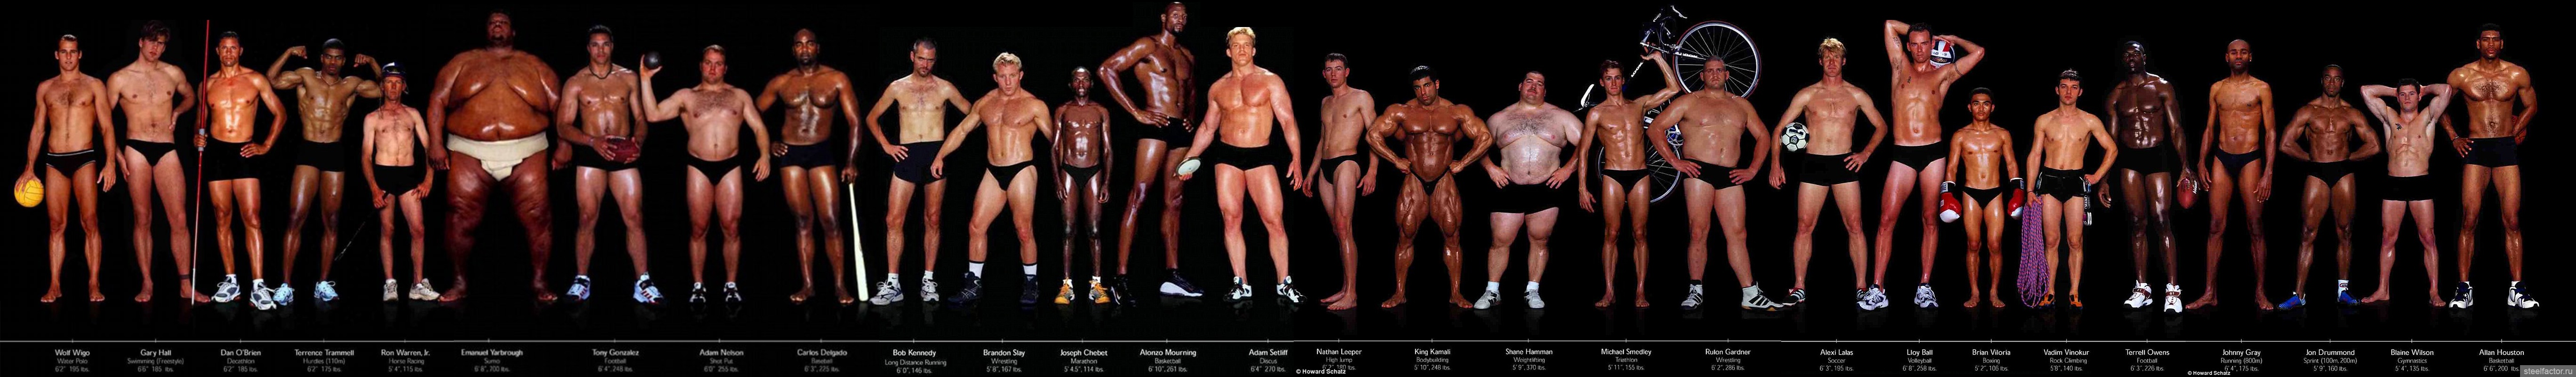 Нижнее 90 у мужчины. Мужские фигуры разных видов спорта. Разные фигуры мужчин. Разные телосложения парней. Разные типы фигур мужчин.